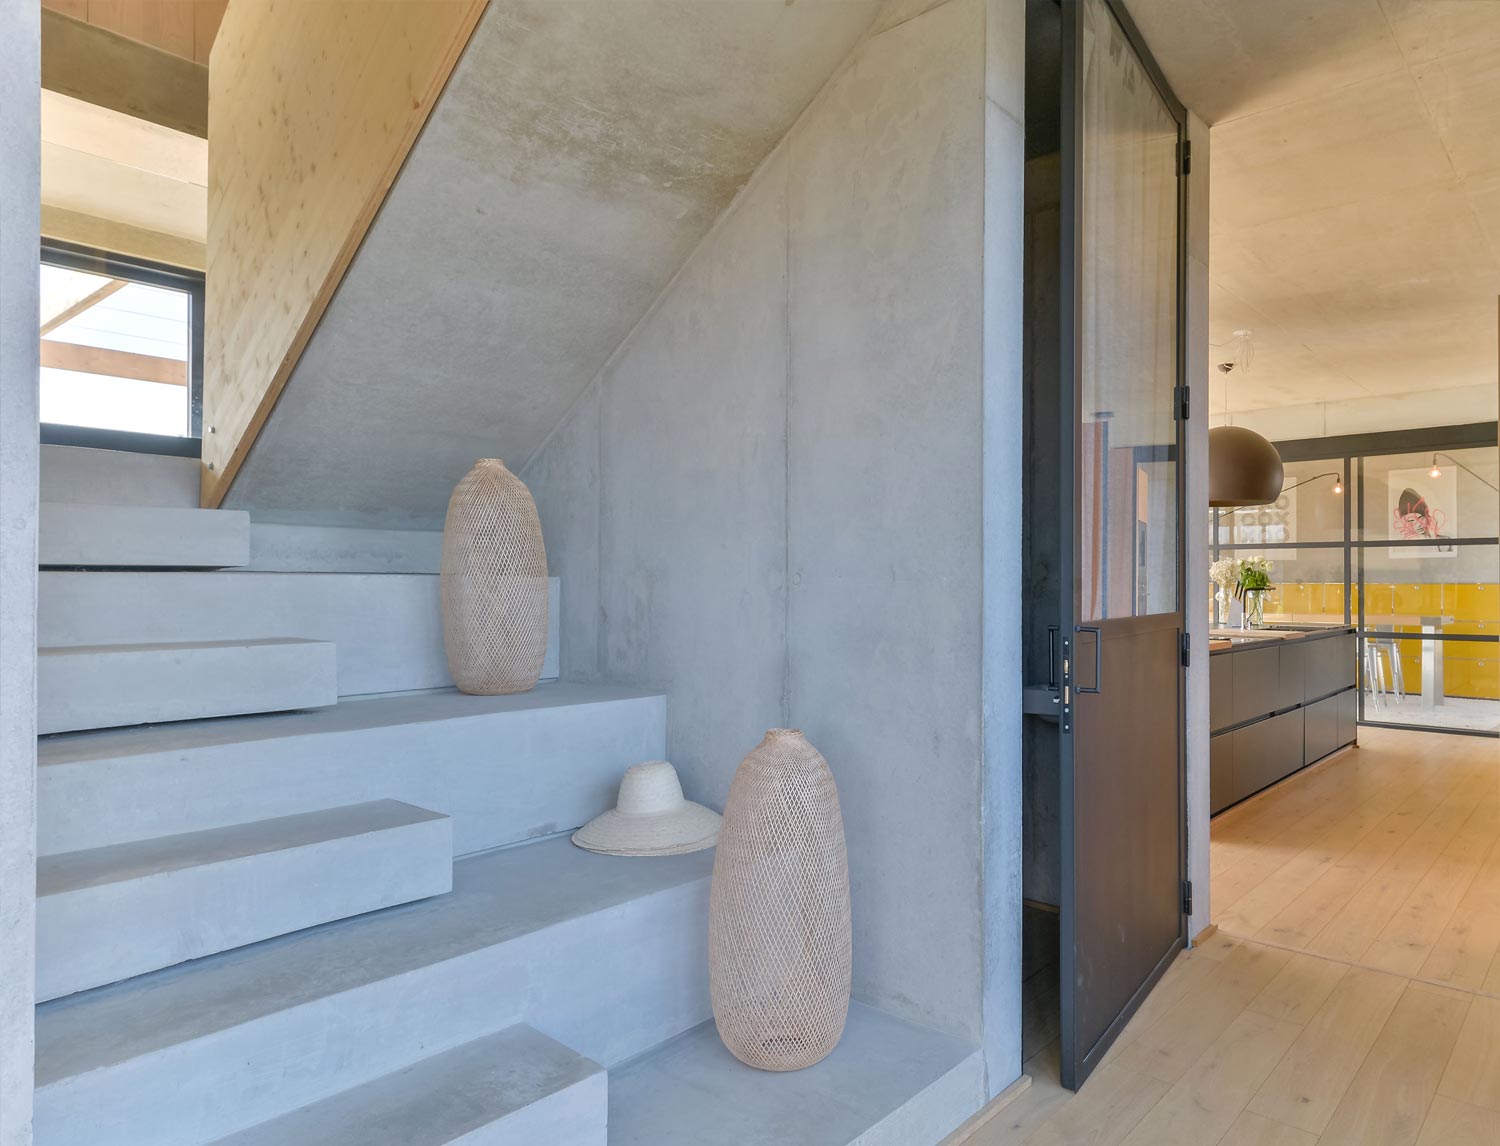 maison architecte design escalier cuisine